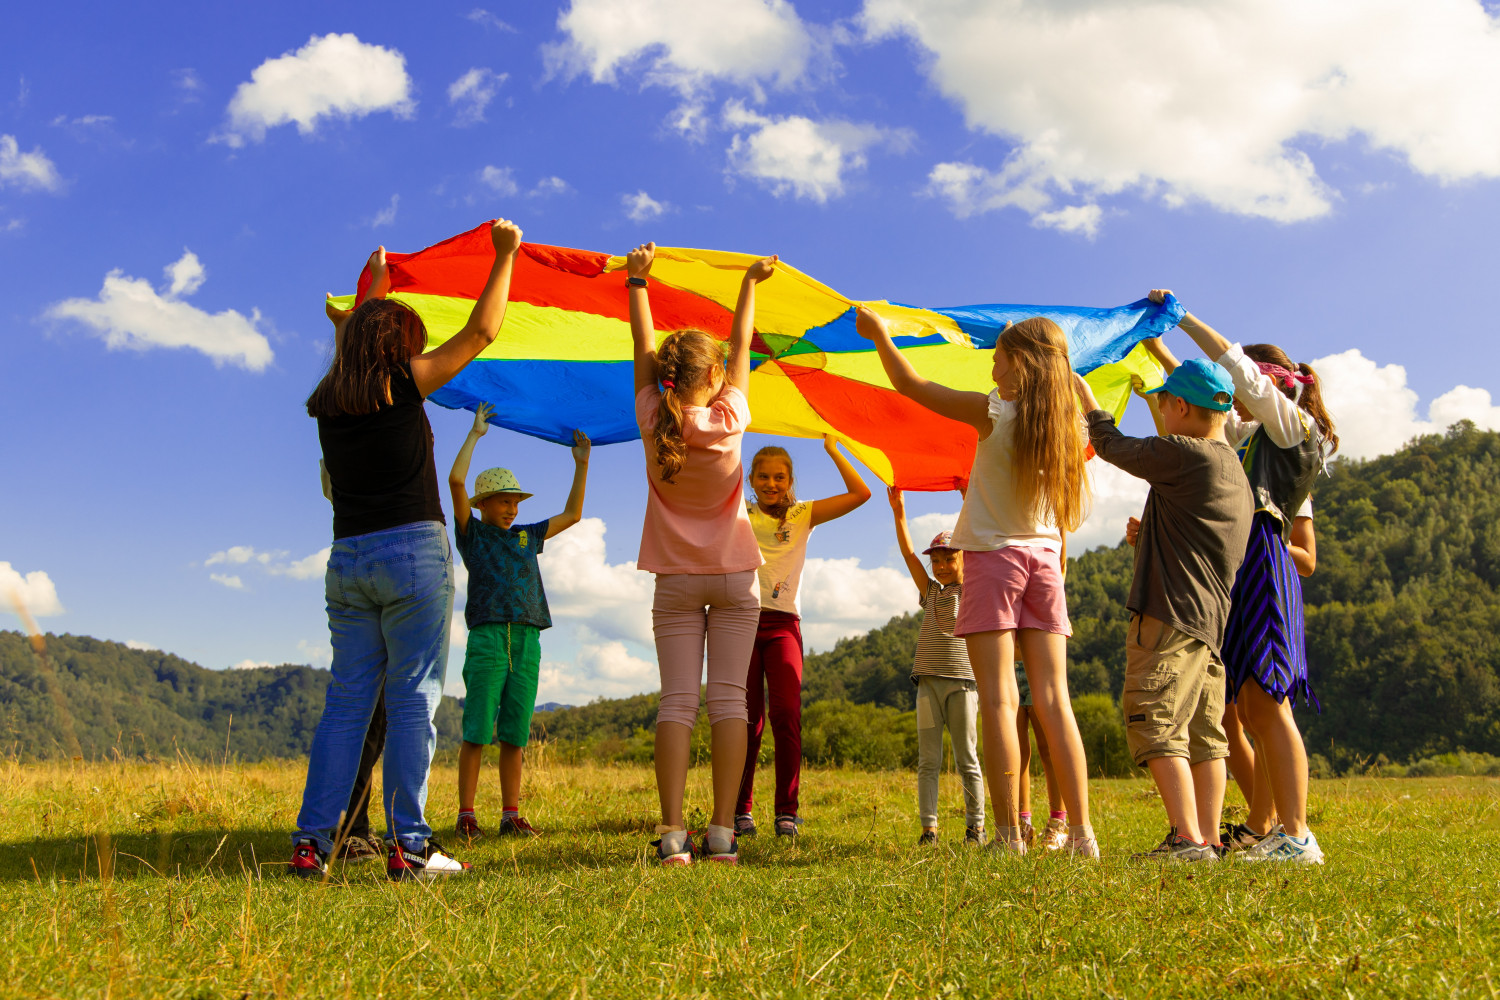 Children in a group waving an open parachute